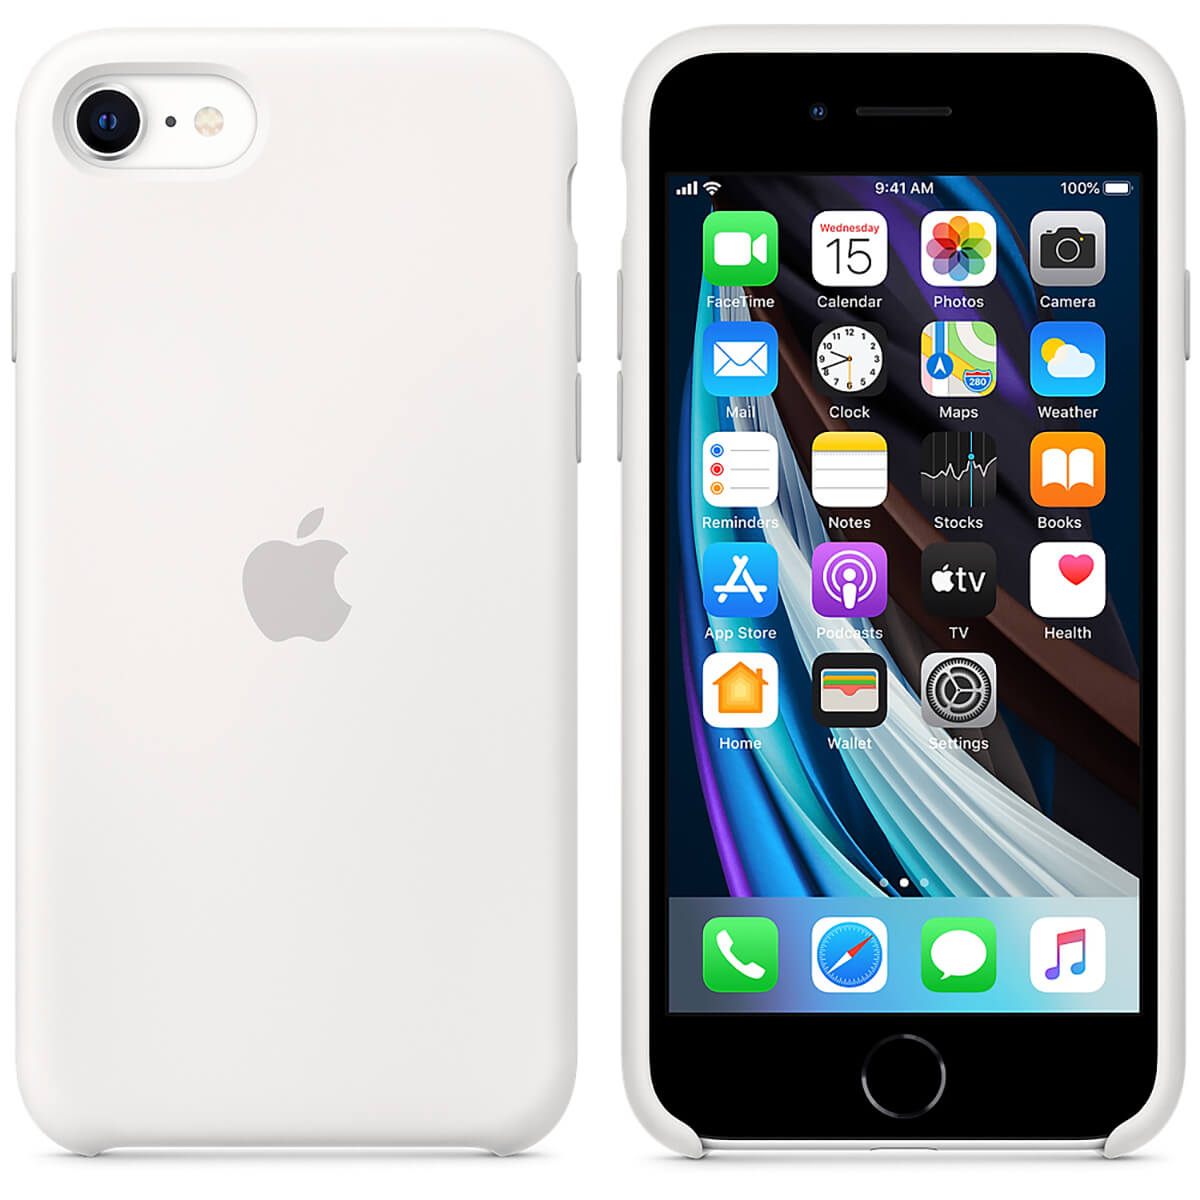 iPhone 8 64GB (PRODUCT)RED (MRRK2) как новый по доступной цене